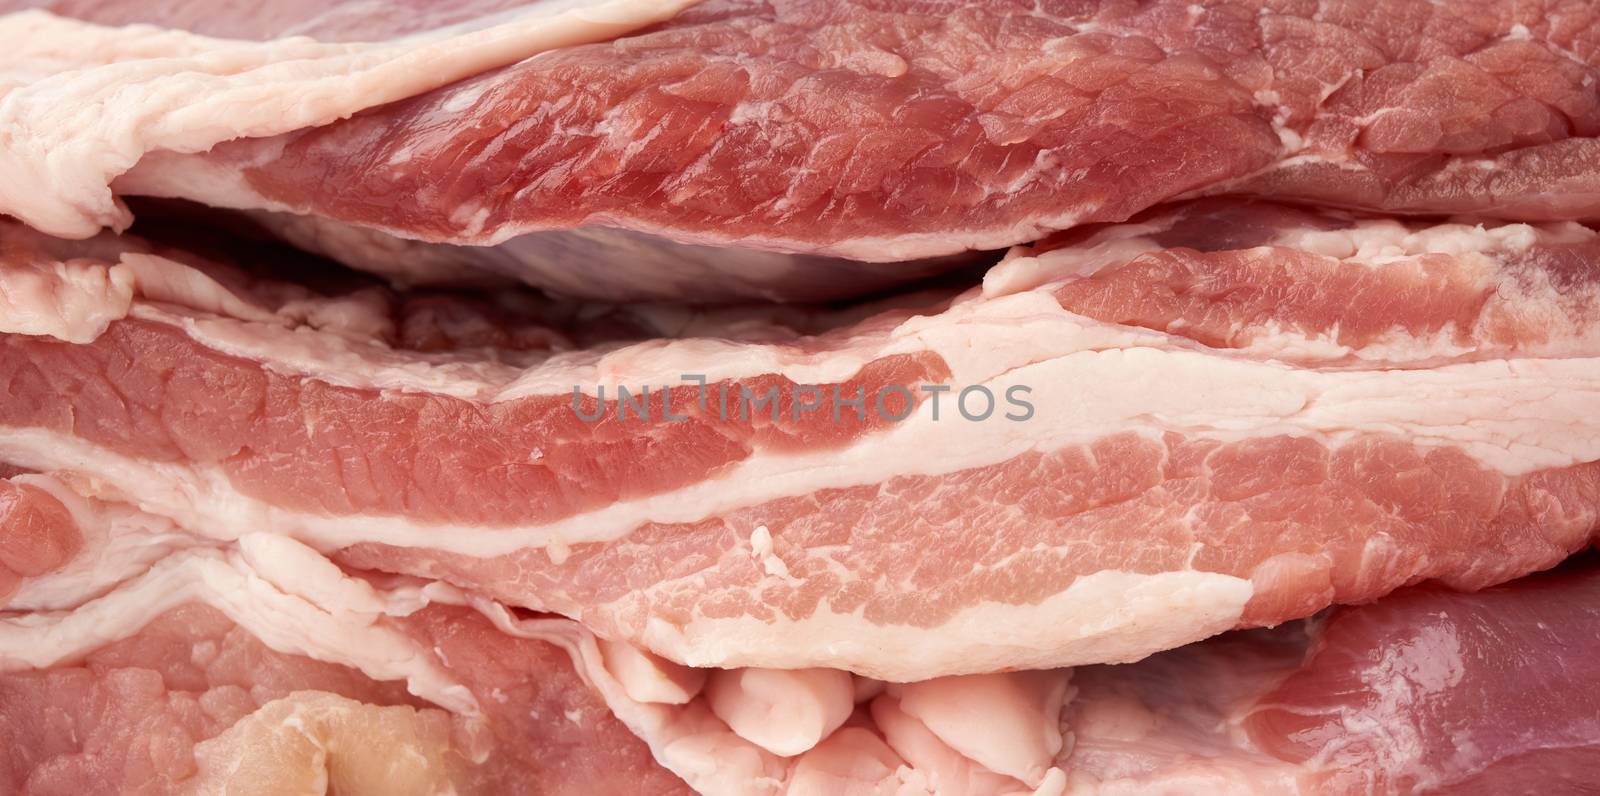 raw pork texture, tenderloin with bacon, bacon, full frame, close up